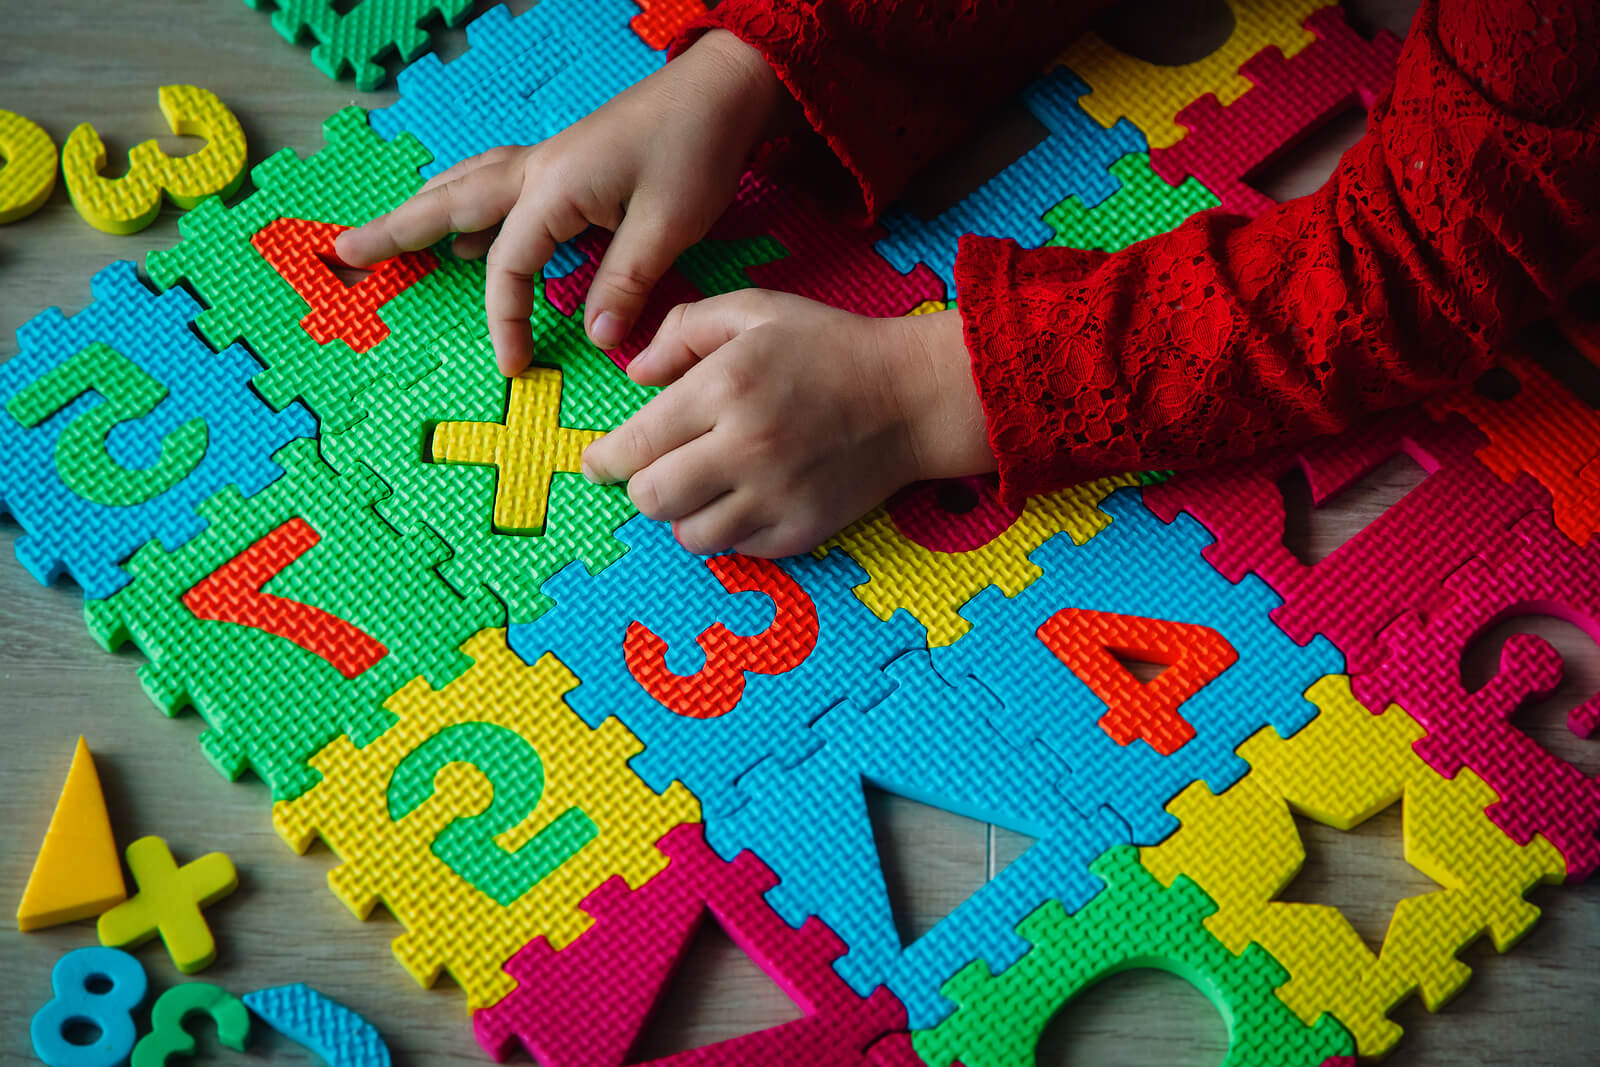 Niño jugando en una alfombra con números porque saber contar no implica conocerlos.